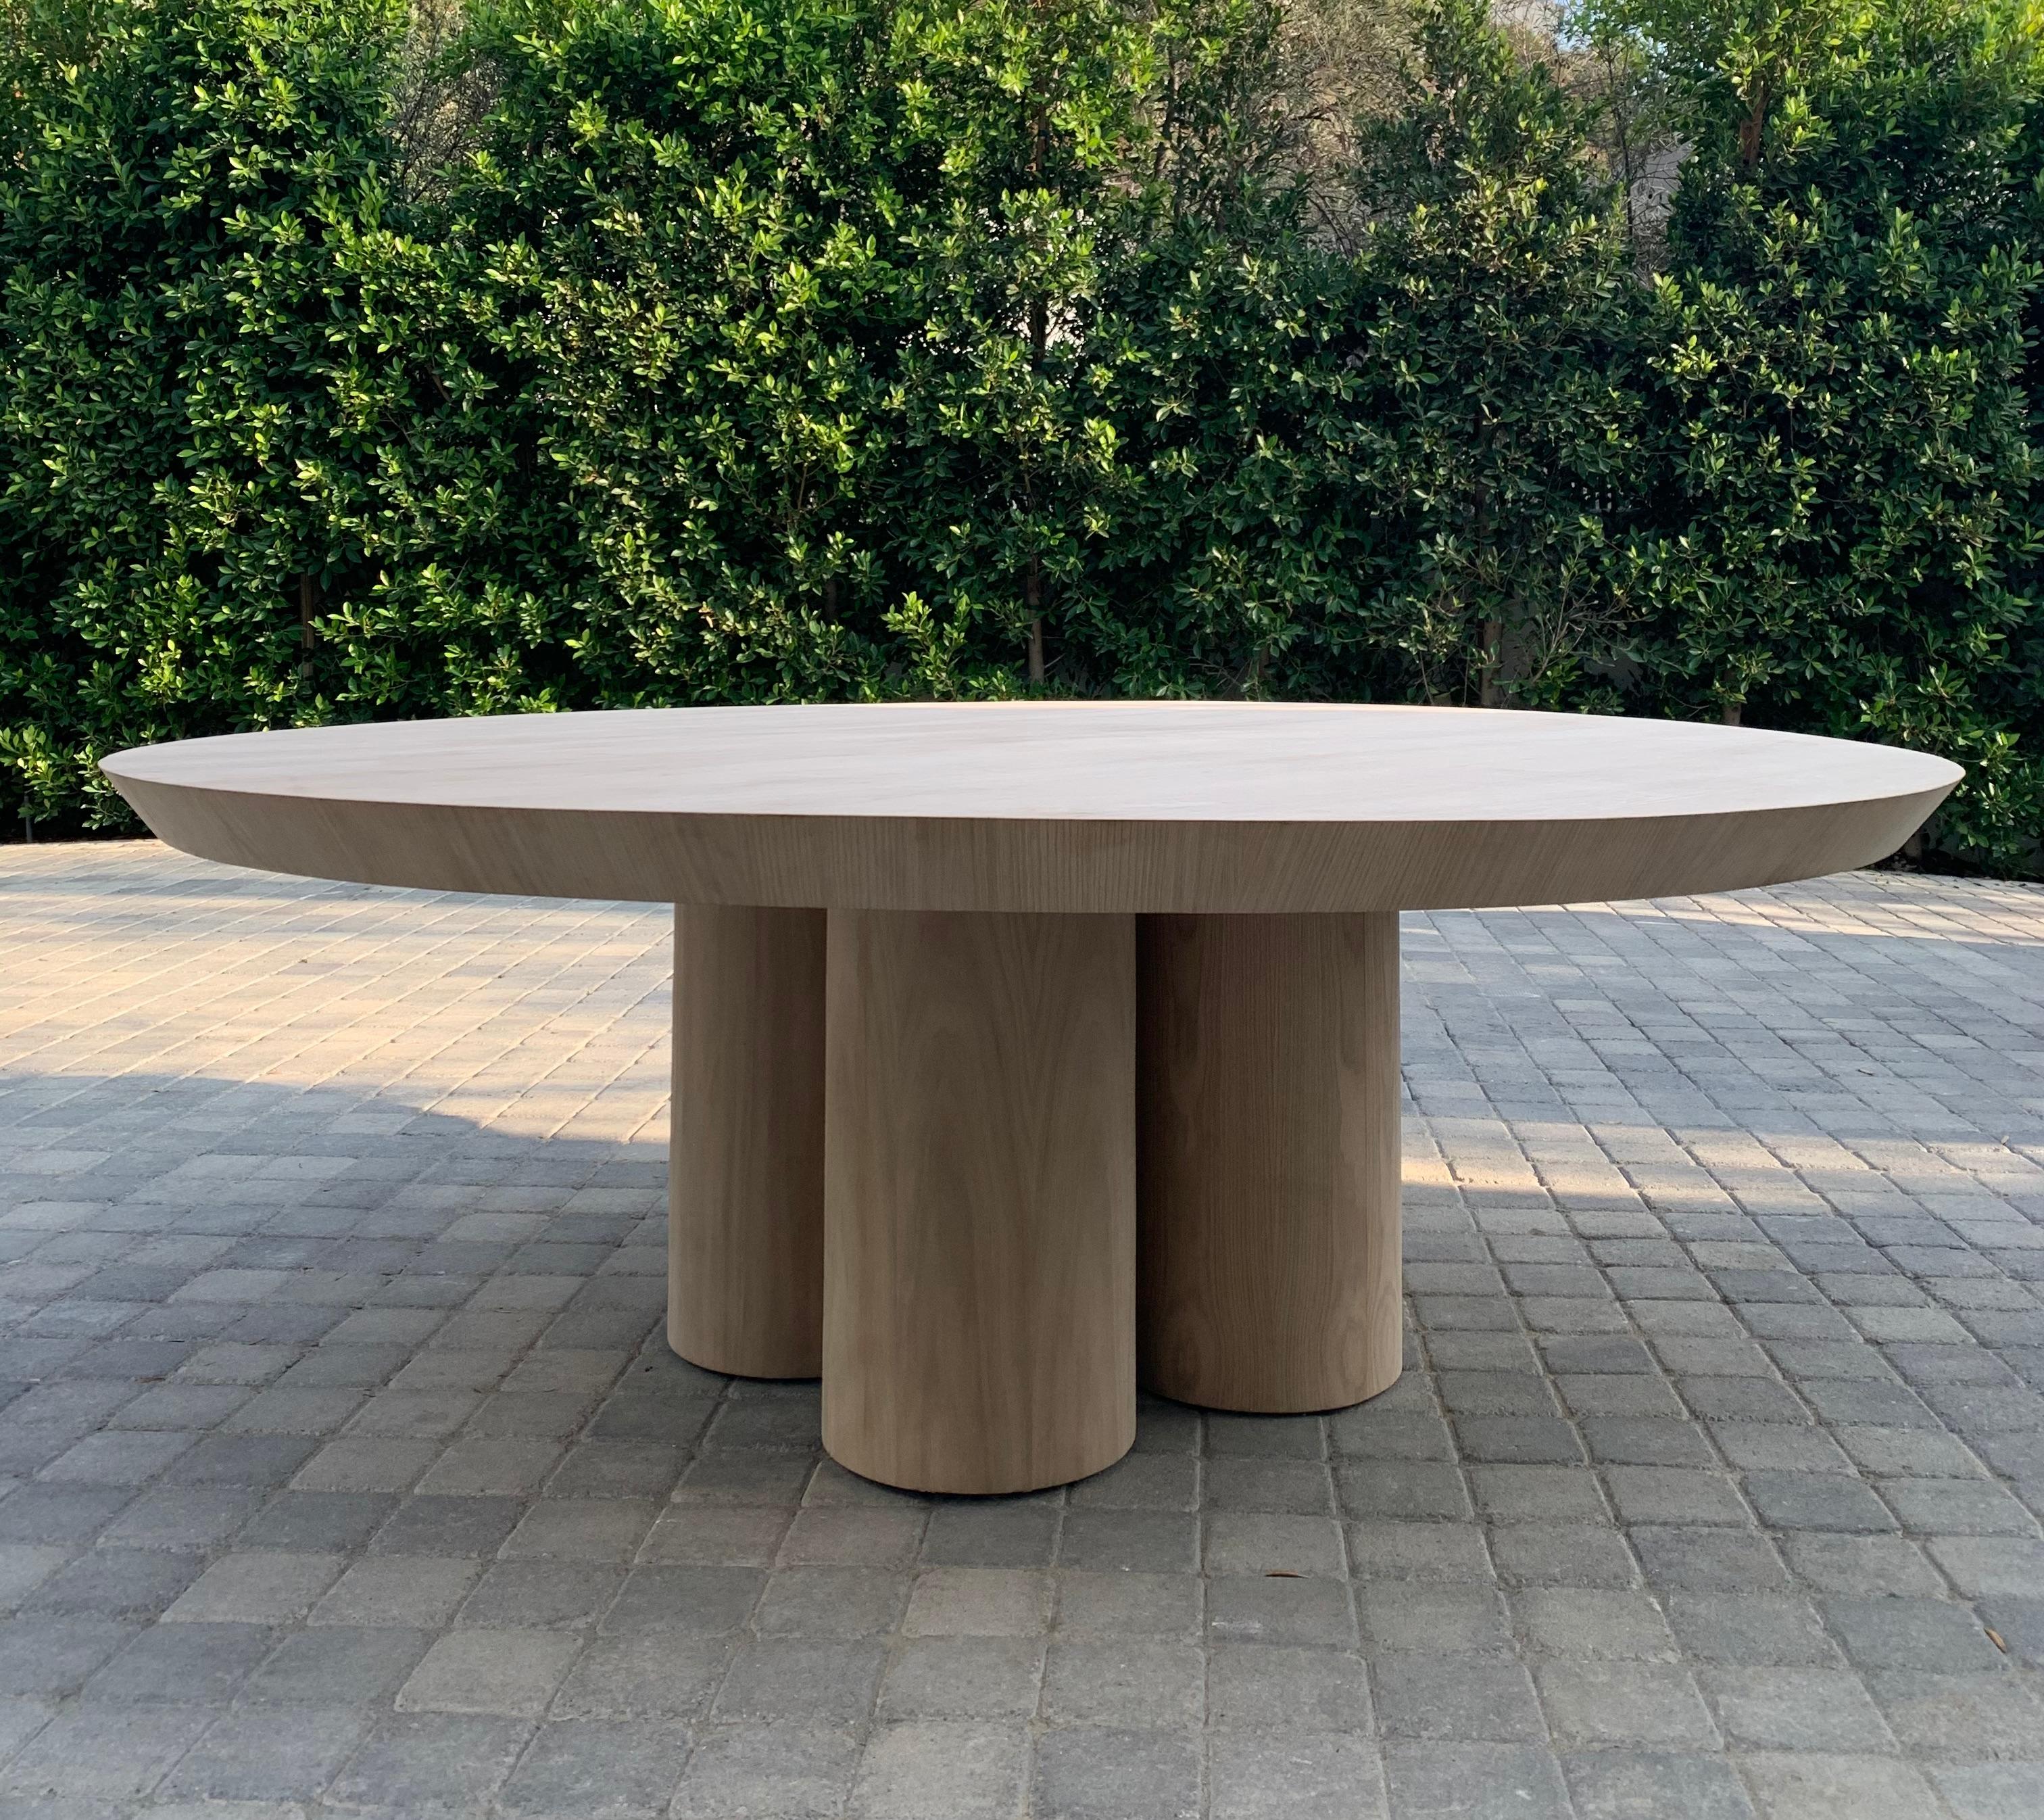 Table de salle à manger en chêne brut sur mesure avec finition mate et pieds cylindriques tripodes.

La largeur de la base est de 2'6